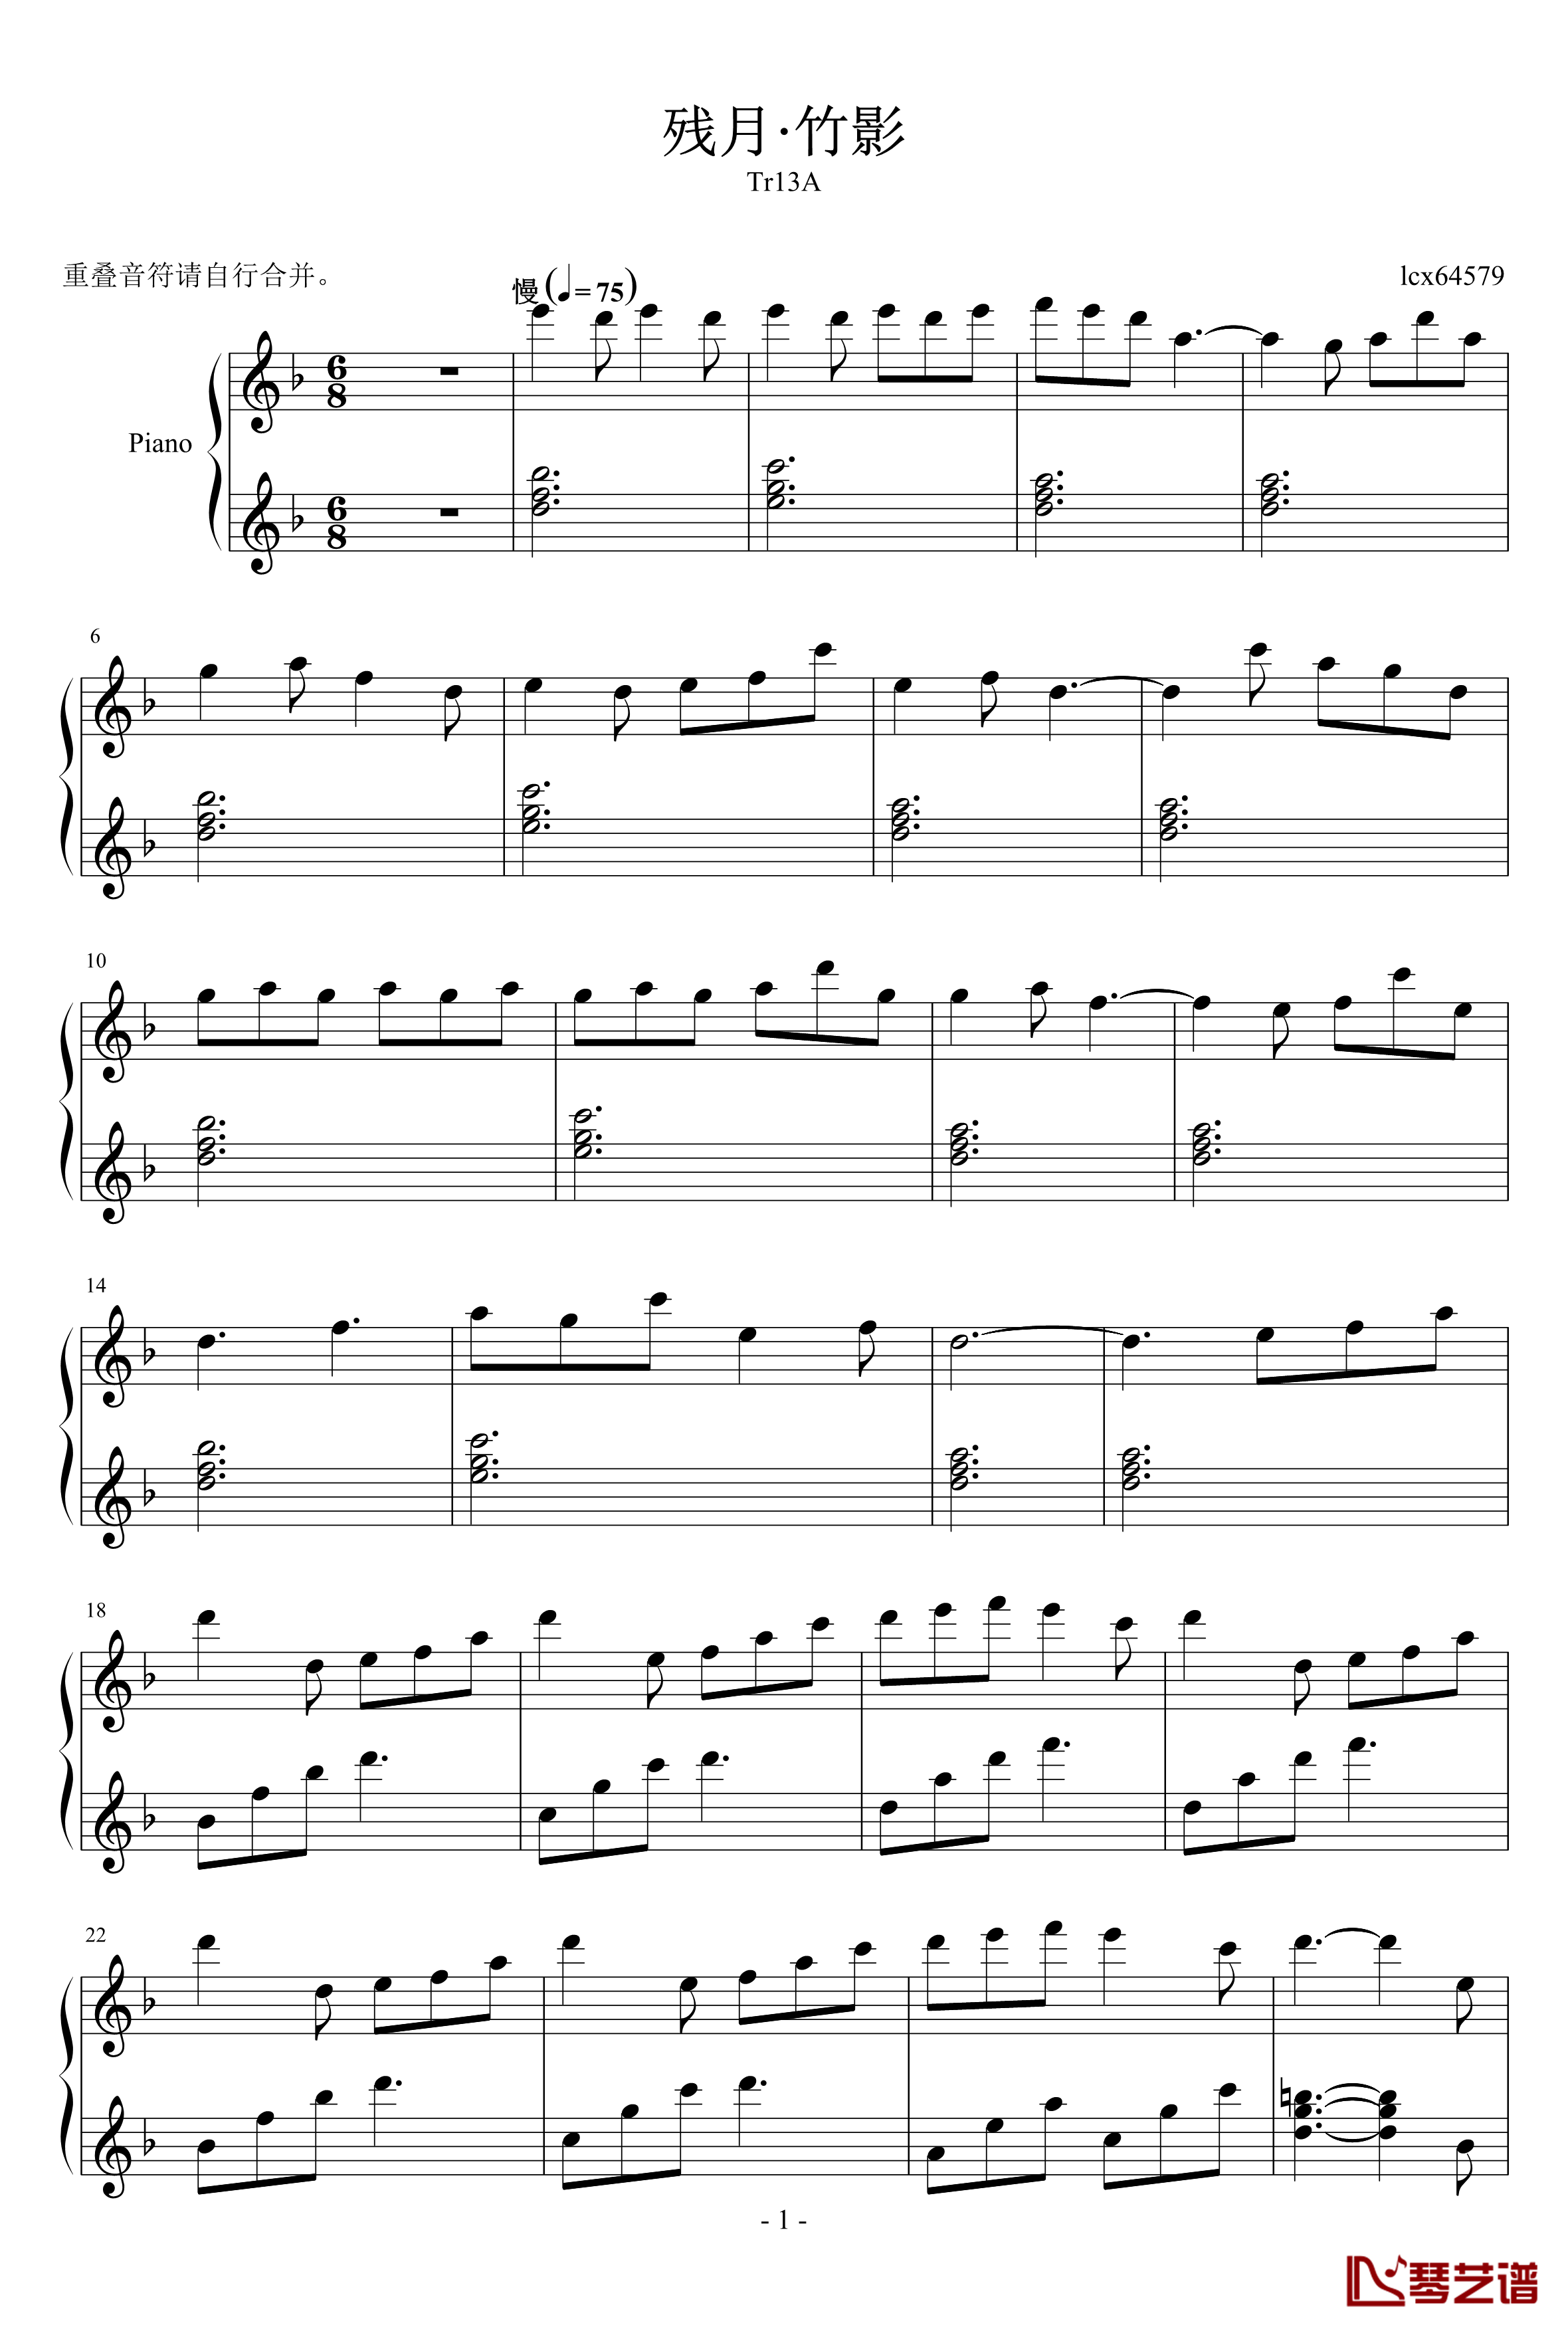 残月竹影钢琴谱-适合大晚上的听-lcx645791